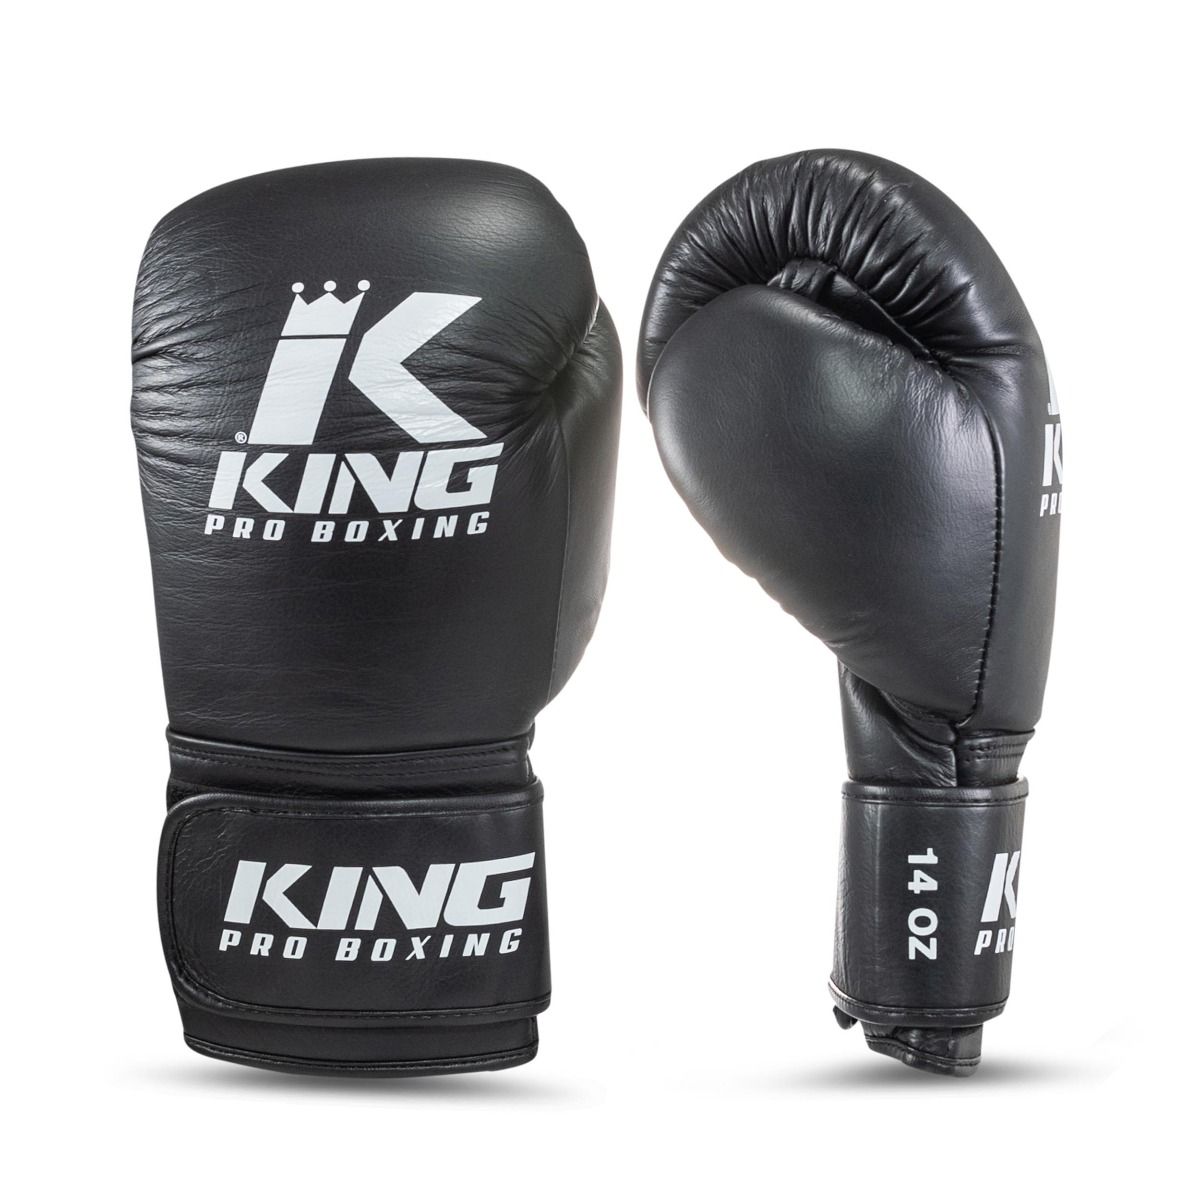 King Pro Boxing - Bokshandschoenen - PROBOX - Zwart